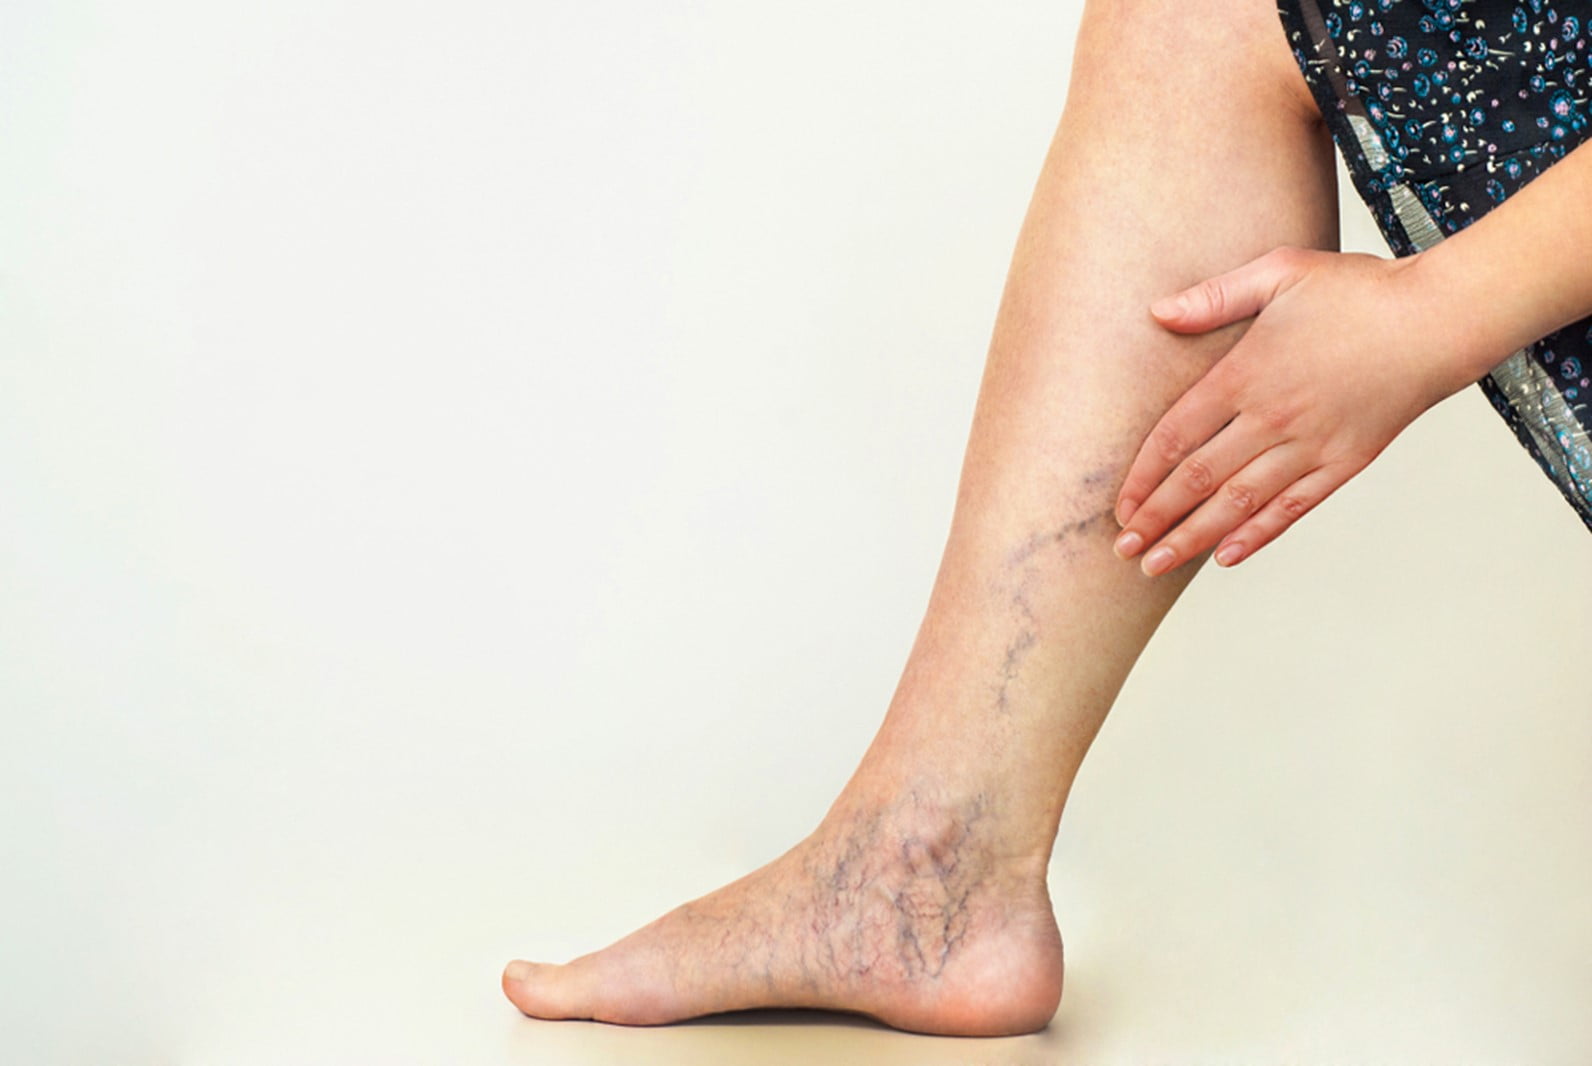 modalitai de tratare varicoza varicoza la stadiul incipient picioare din piele uscata varicoza